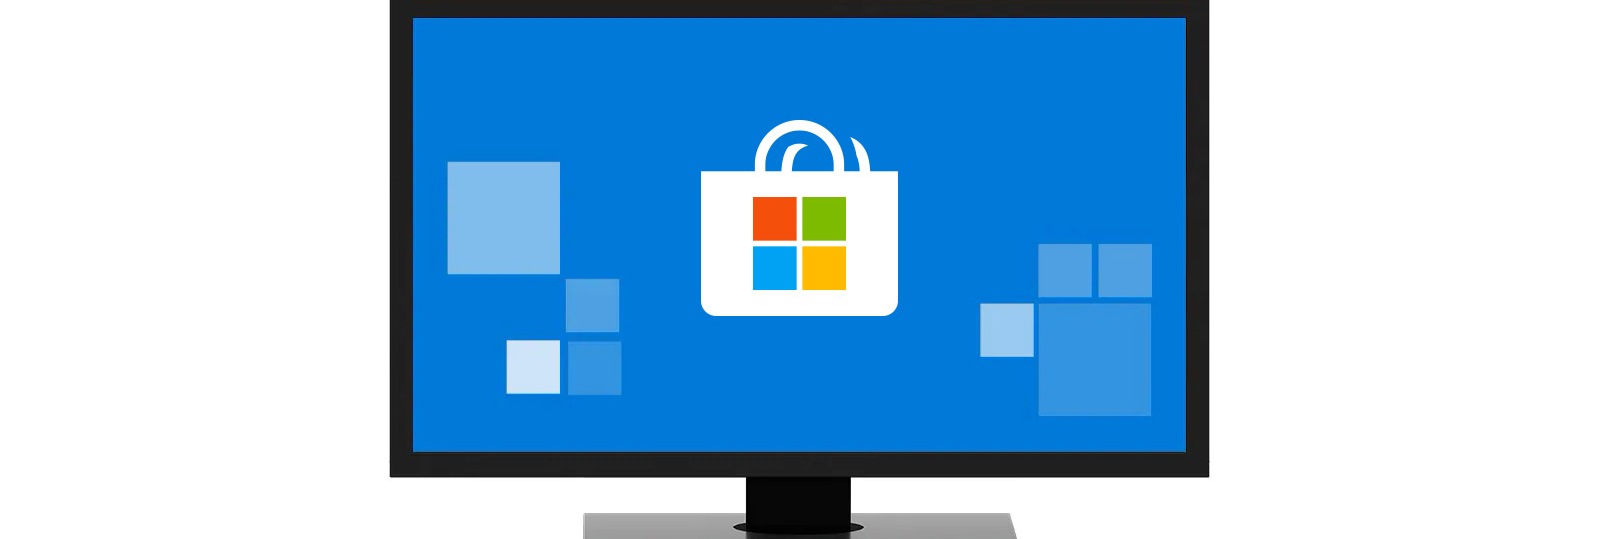 การเลนเกมบนพซ Windows 10 Microsoft - how to have 2 roblox windows open